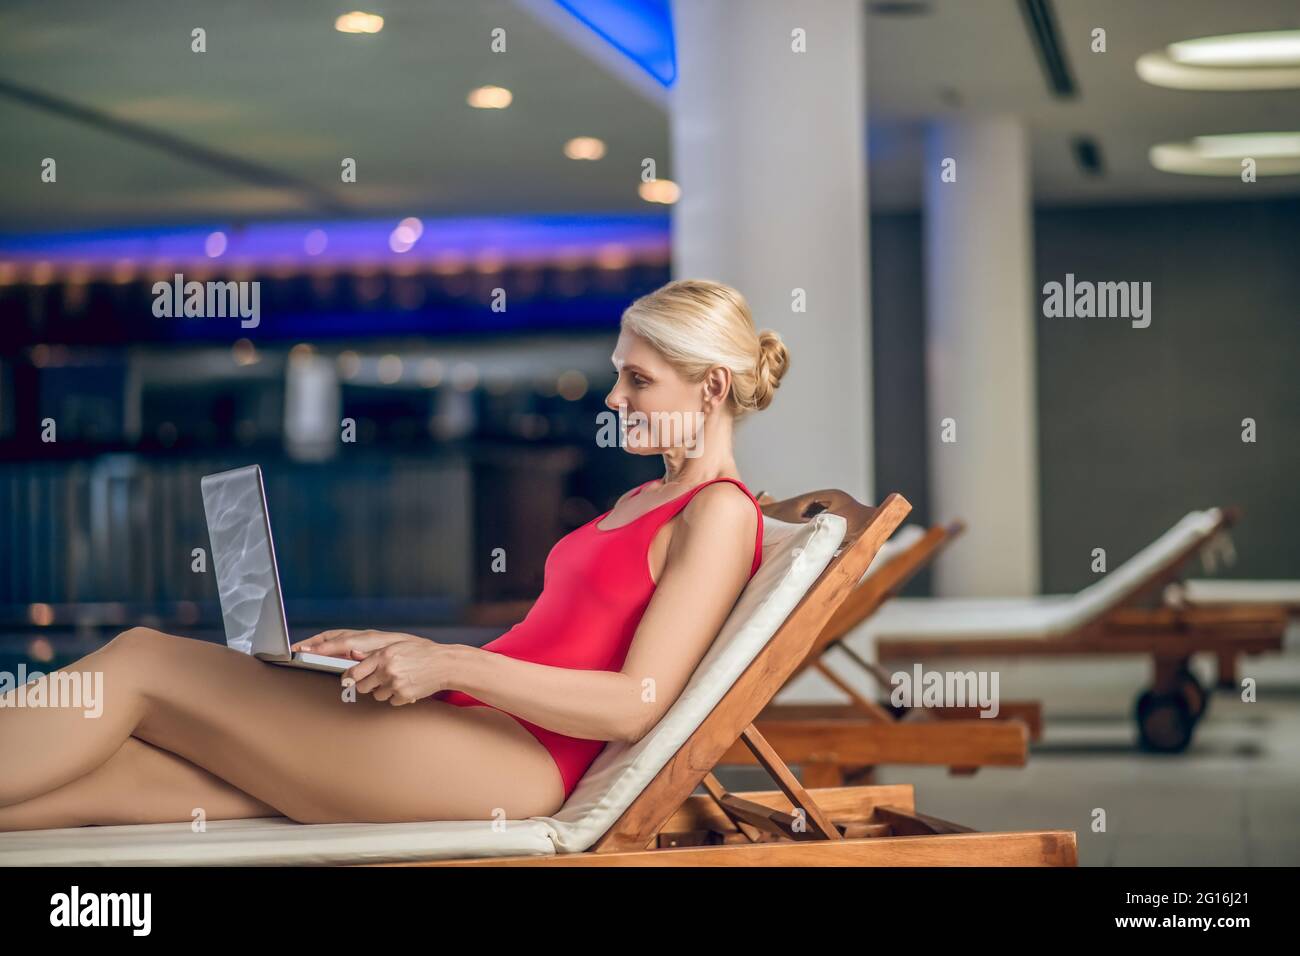 Femme blonde dans un costume de natation en roseau avec un ordinateur portable Banque D'Images